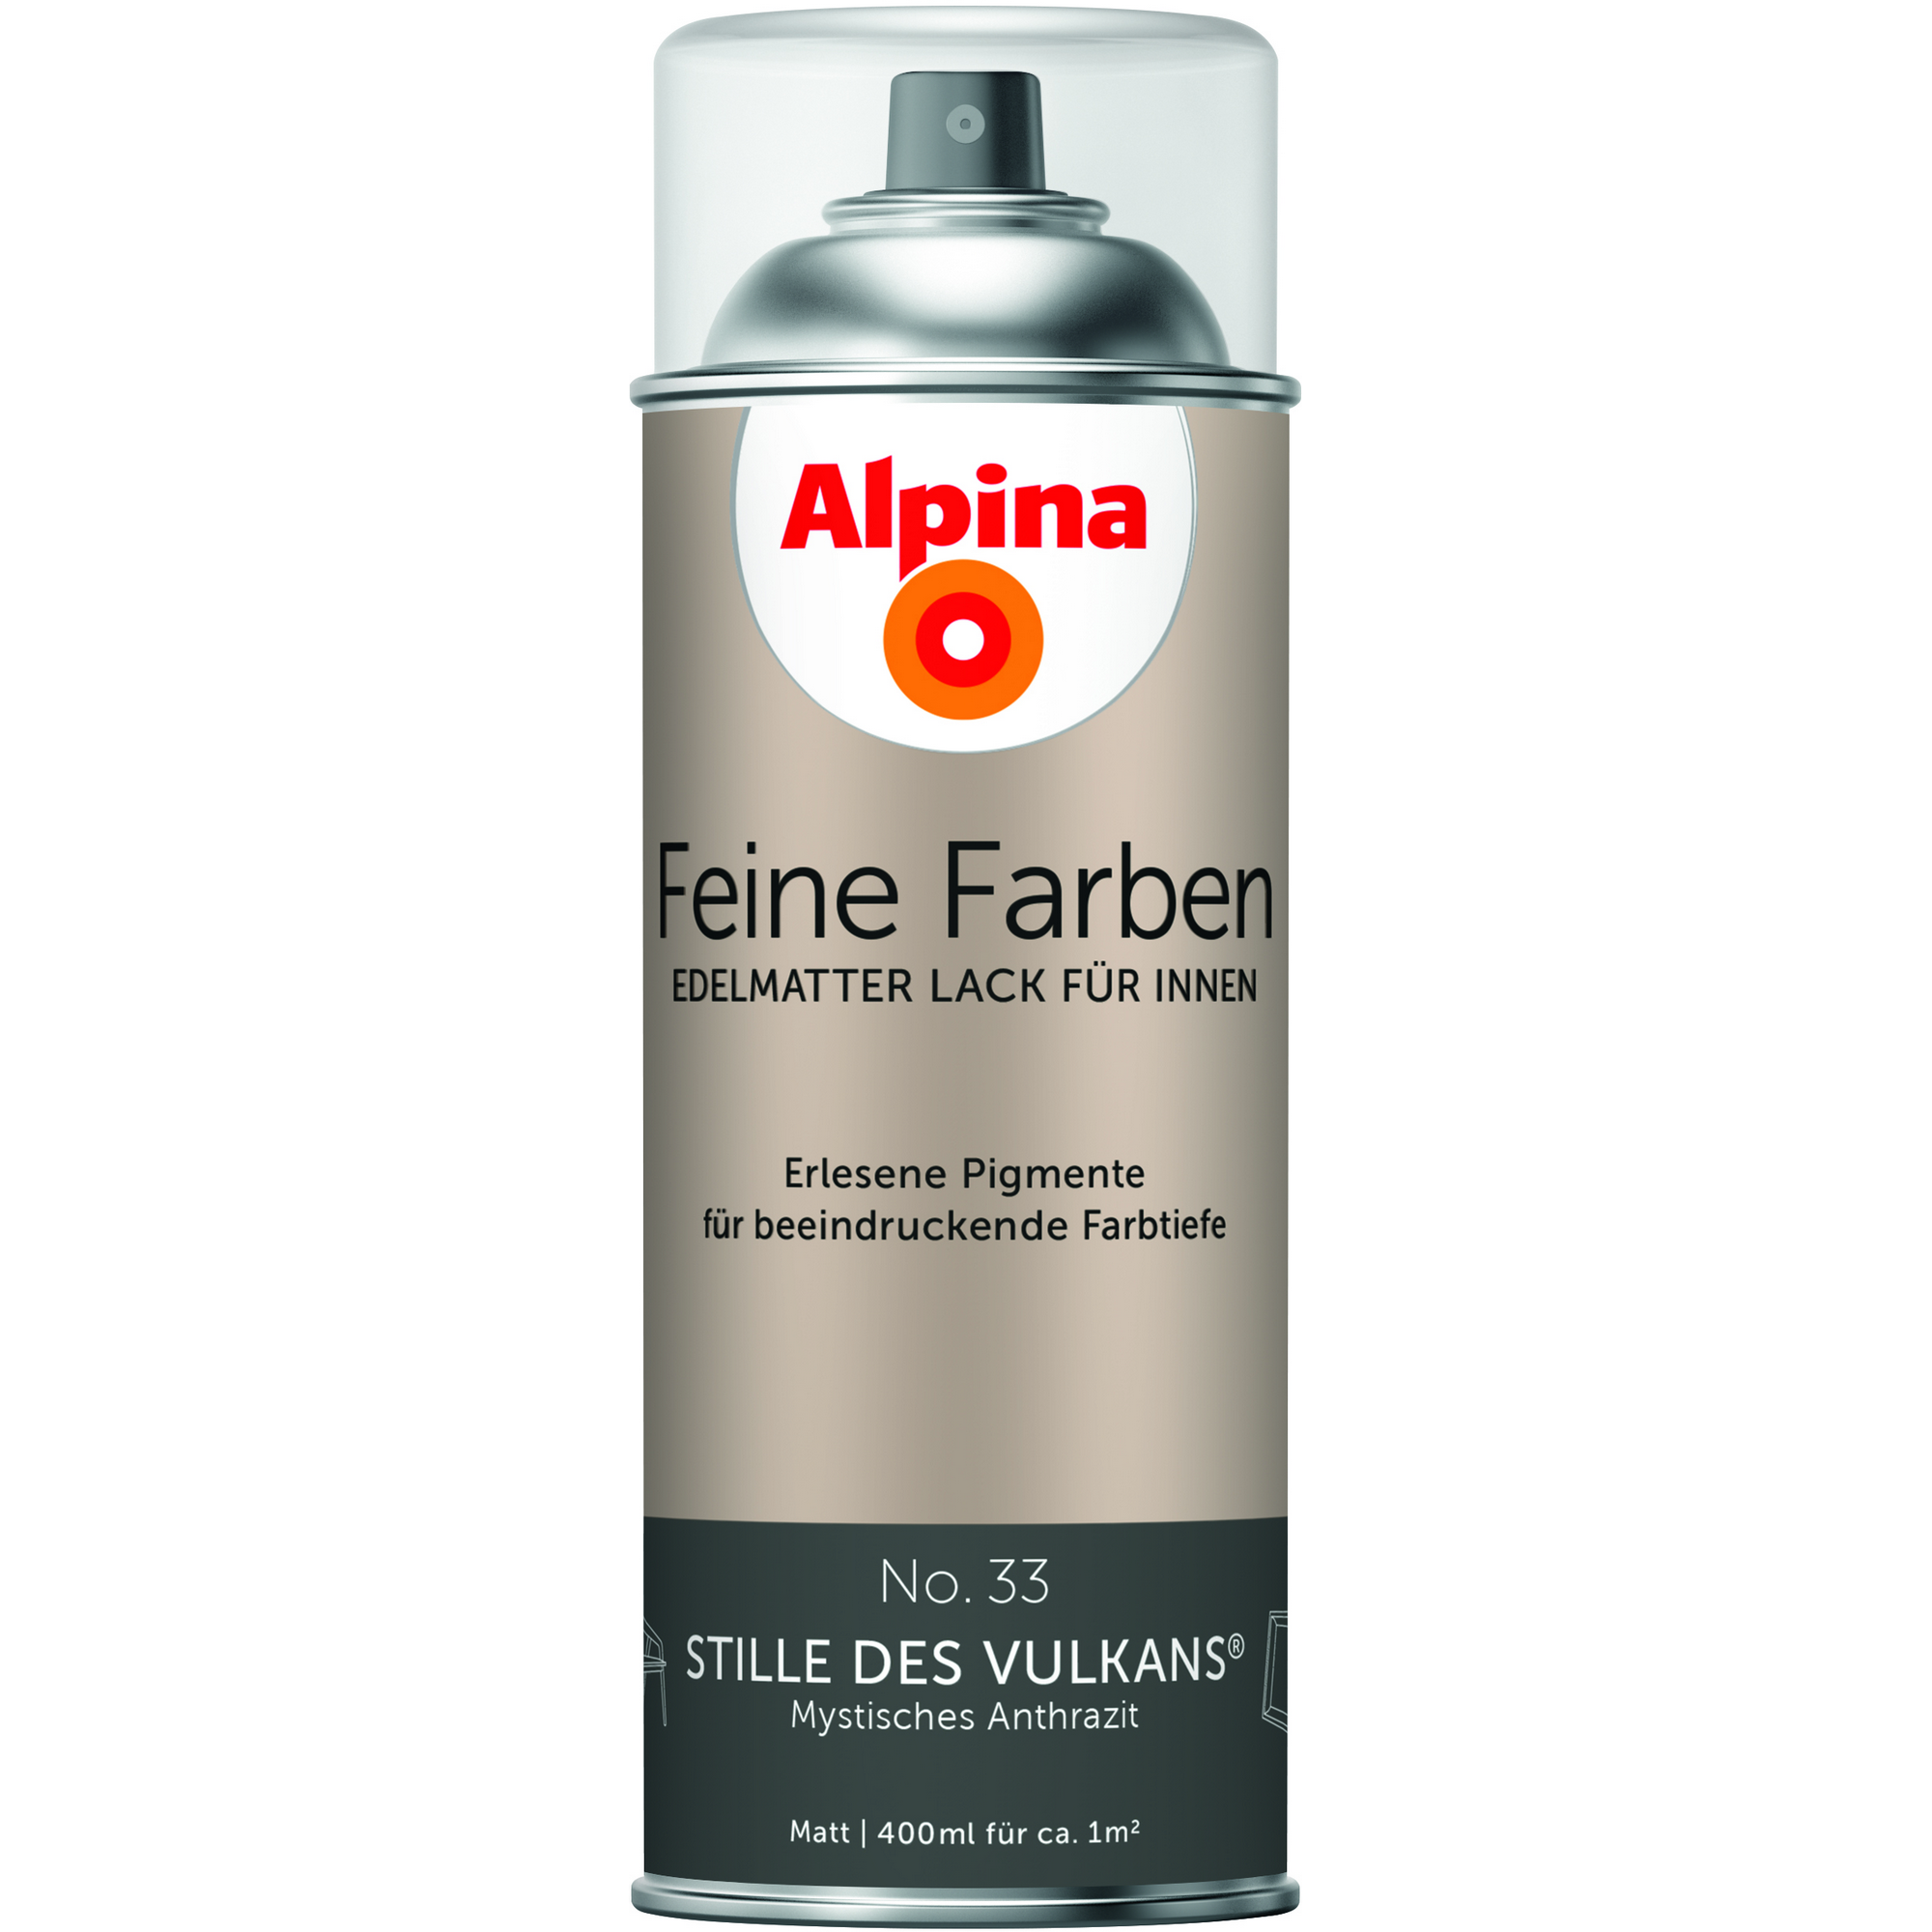 Feine Farben 'Stille des Vulkans' anthrazitgrau matt 400 ml + product picture